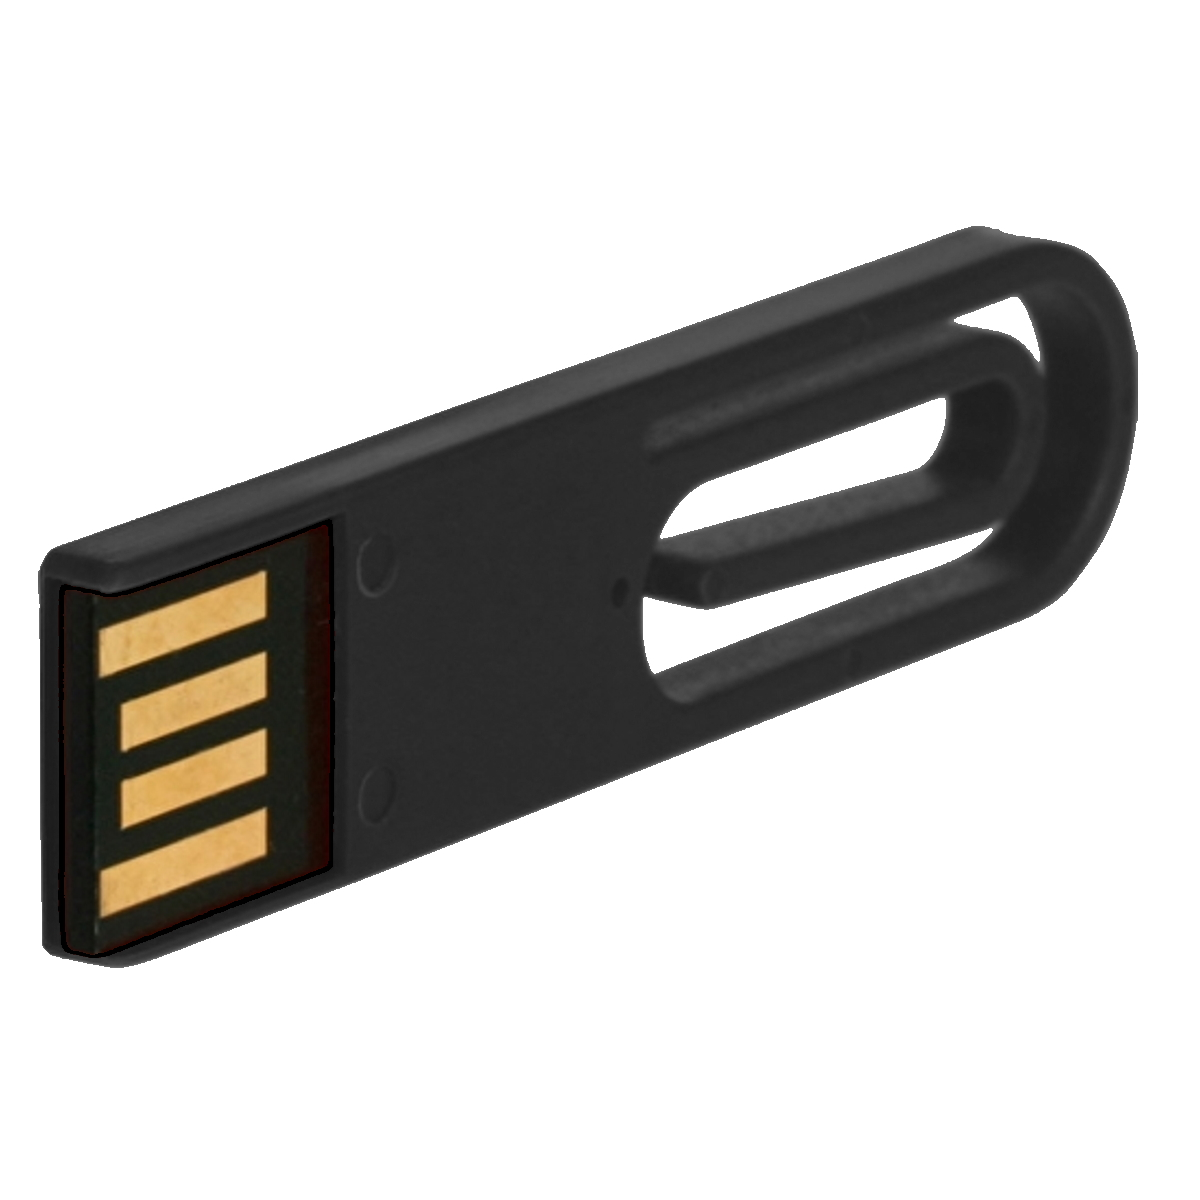 64 GERMANY eCLIP USB-Stick ® USB (Schwarz, GB)